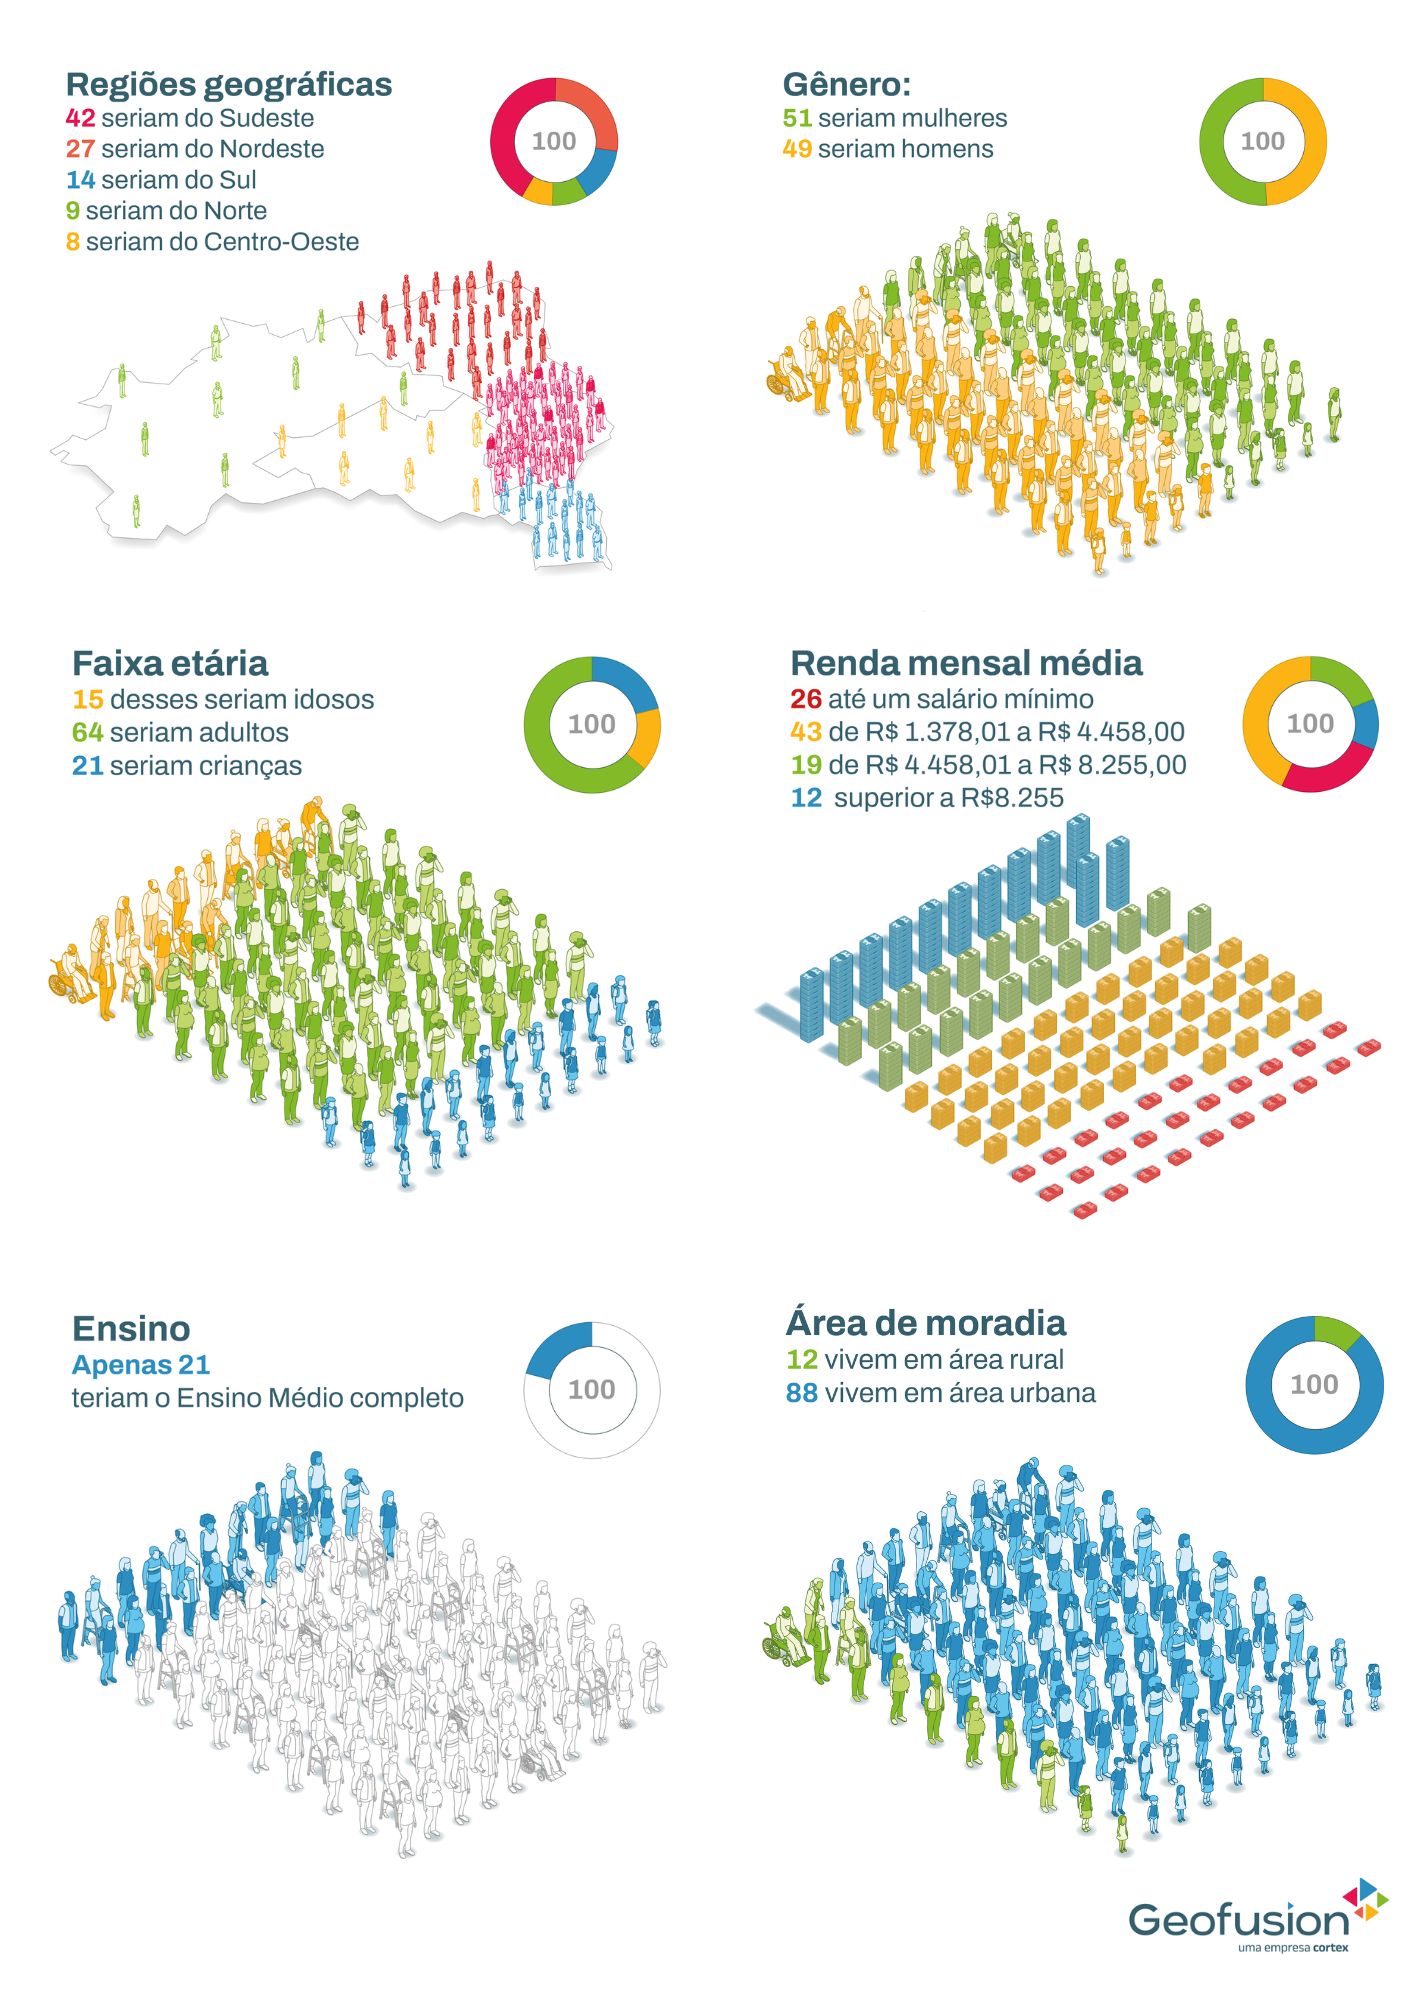 se-o-brasil-fosse-composto-por-100-pessoas-infografico